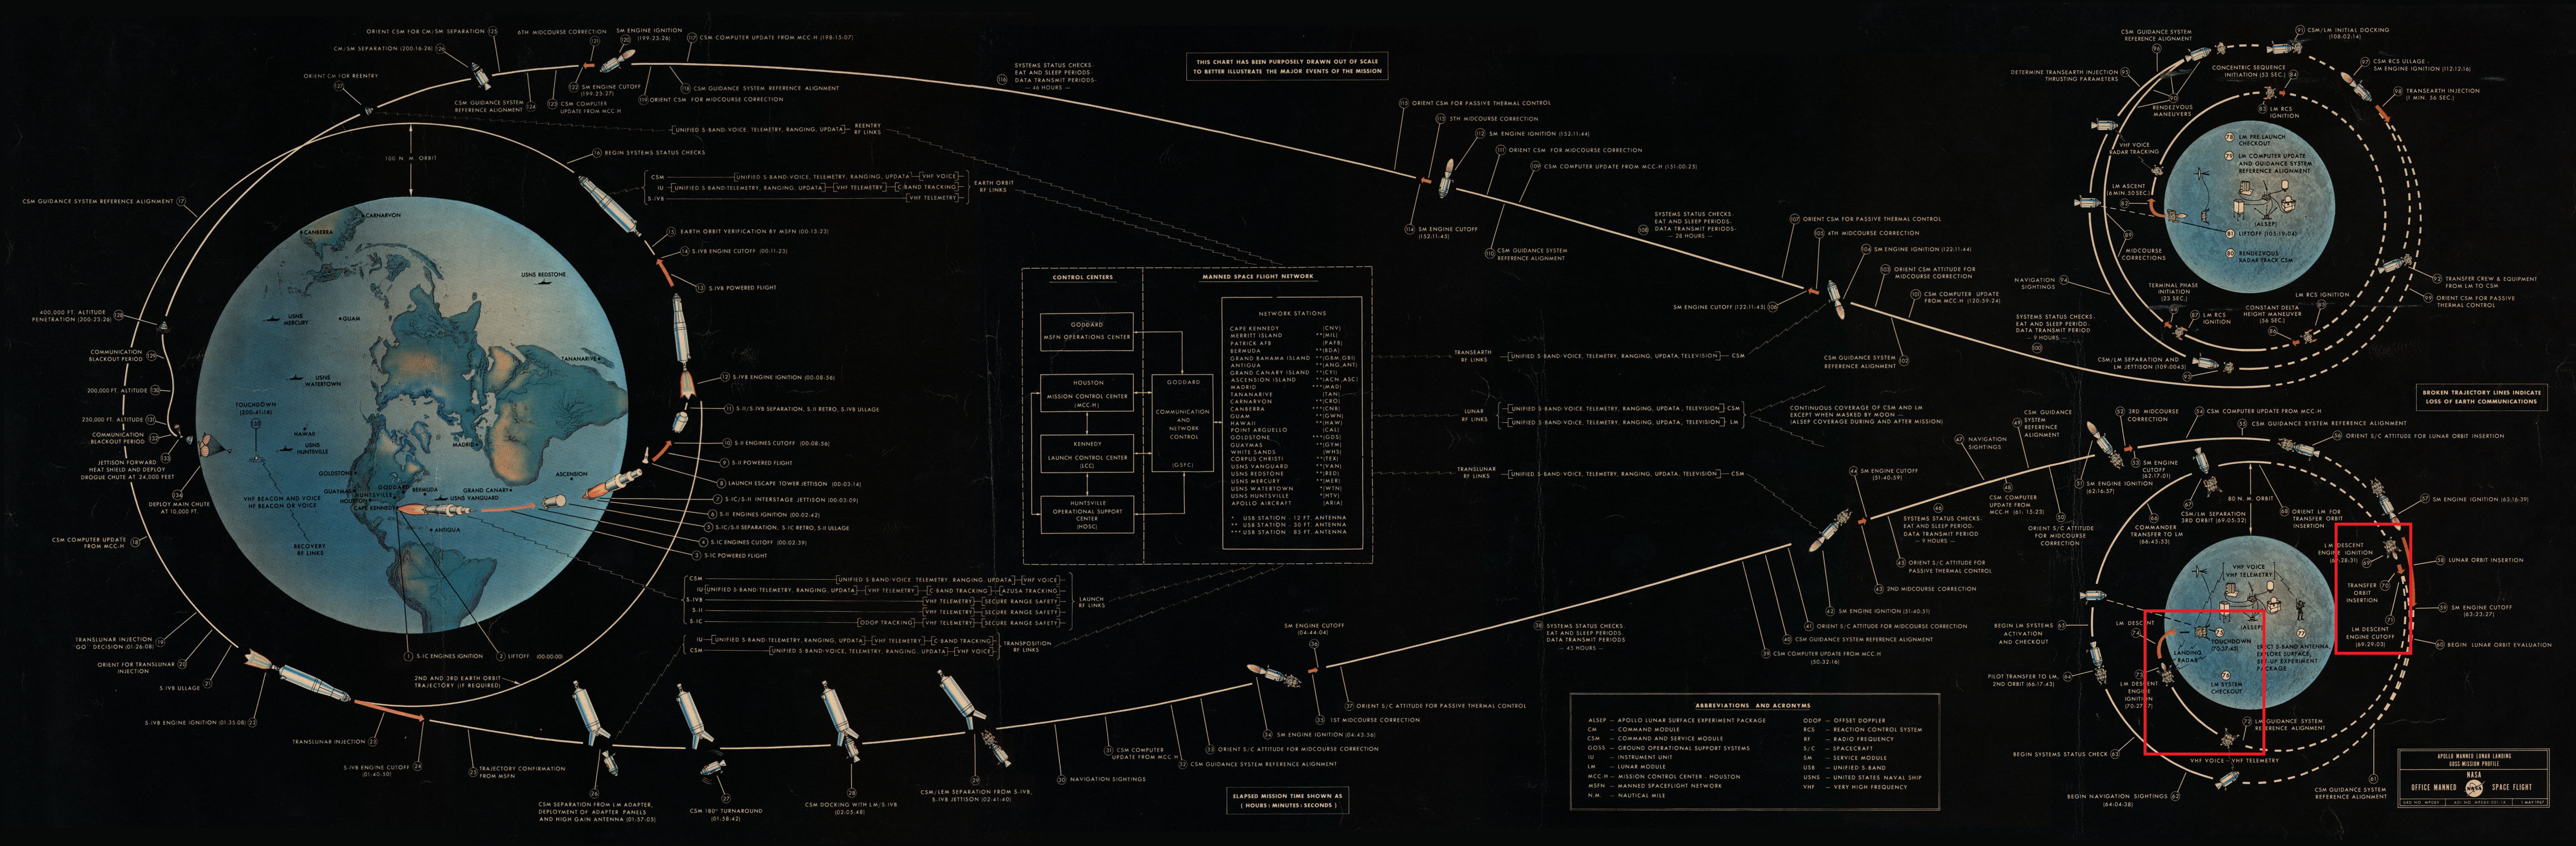 Diagram explicatif du déroulé d'une mission Apollo - phase de descente vers la surface lunaire mise en avant